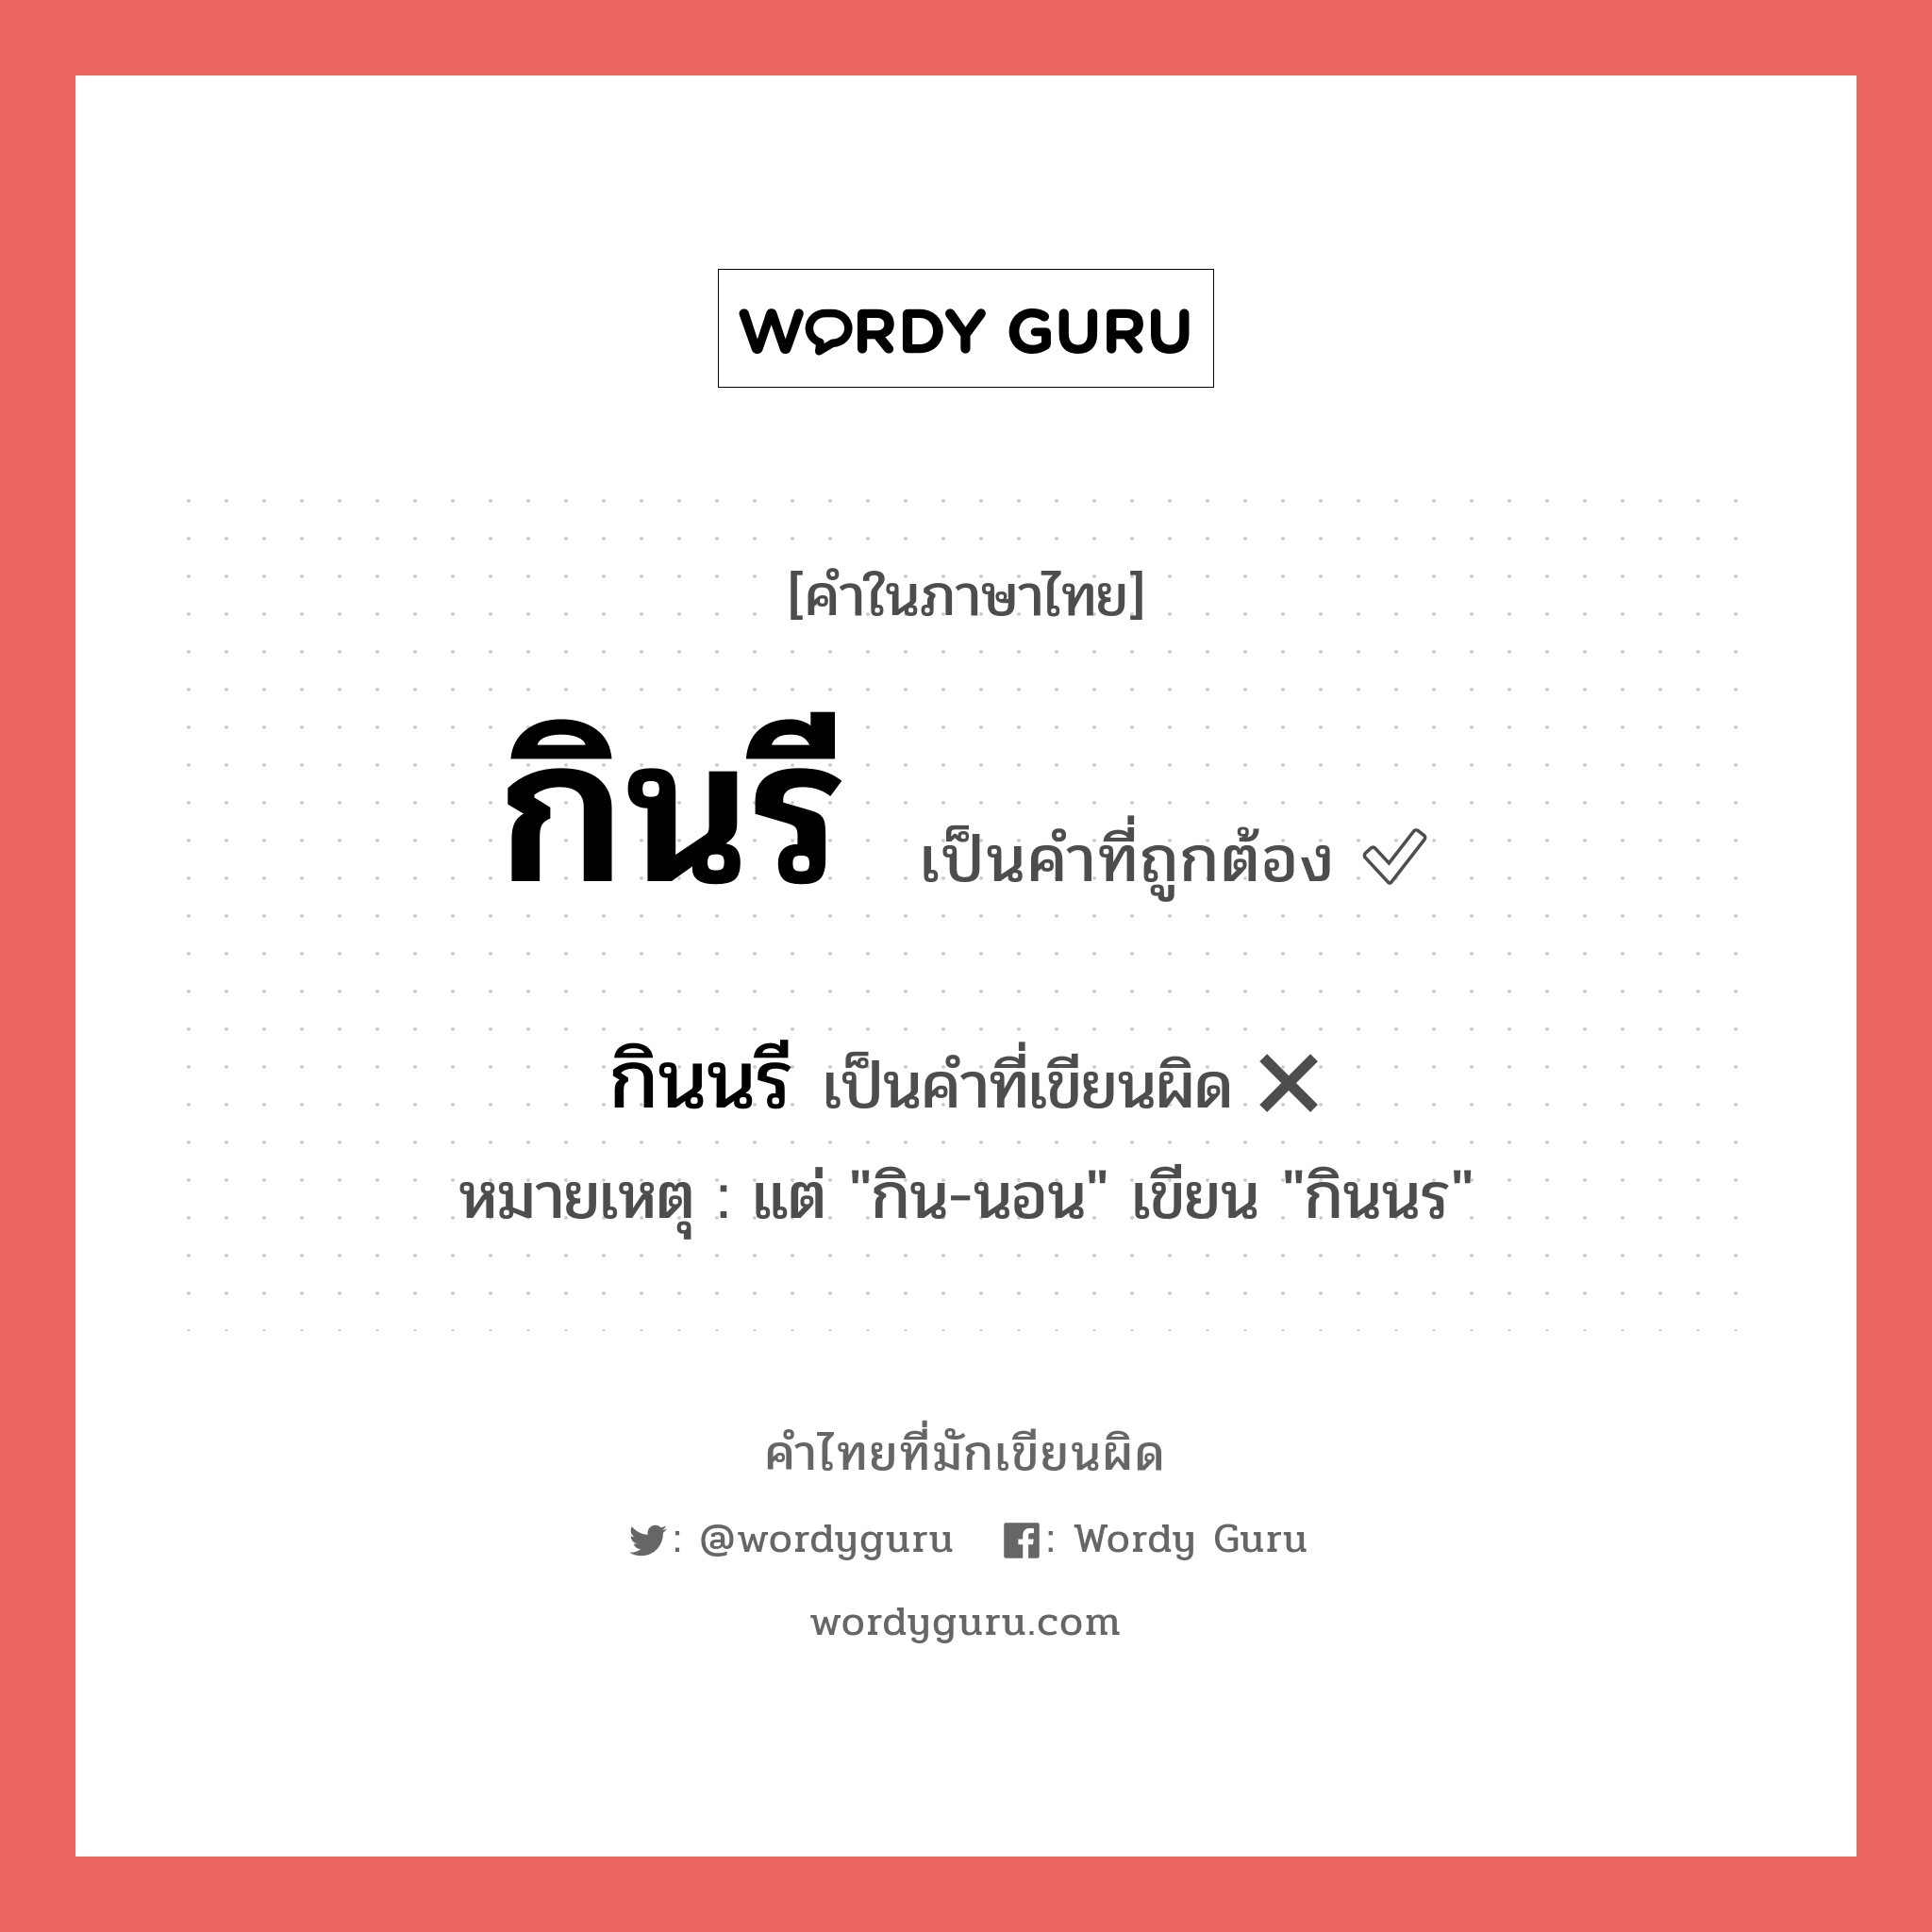 กินรี หรือ กินนรี เขียนยังไง? คำไหนเขียนถูก?, คำในภาษาไทยที่มักเขียนผิด กินรี คำที่ผิด ❌ กินนรี หมายเหตุ แต่ "กิน-นอน" เขียน "กินนร"